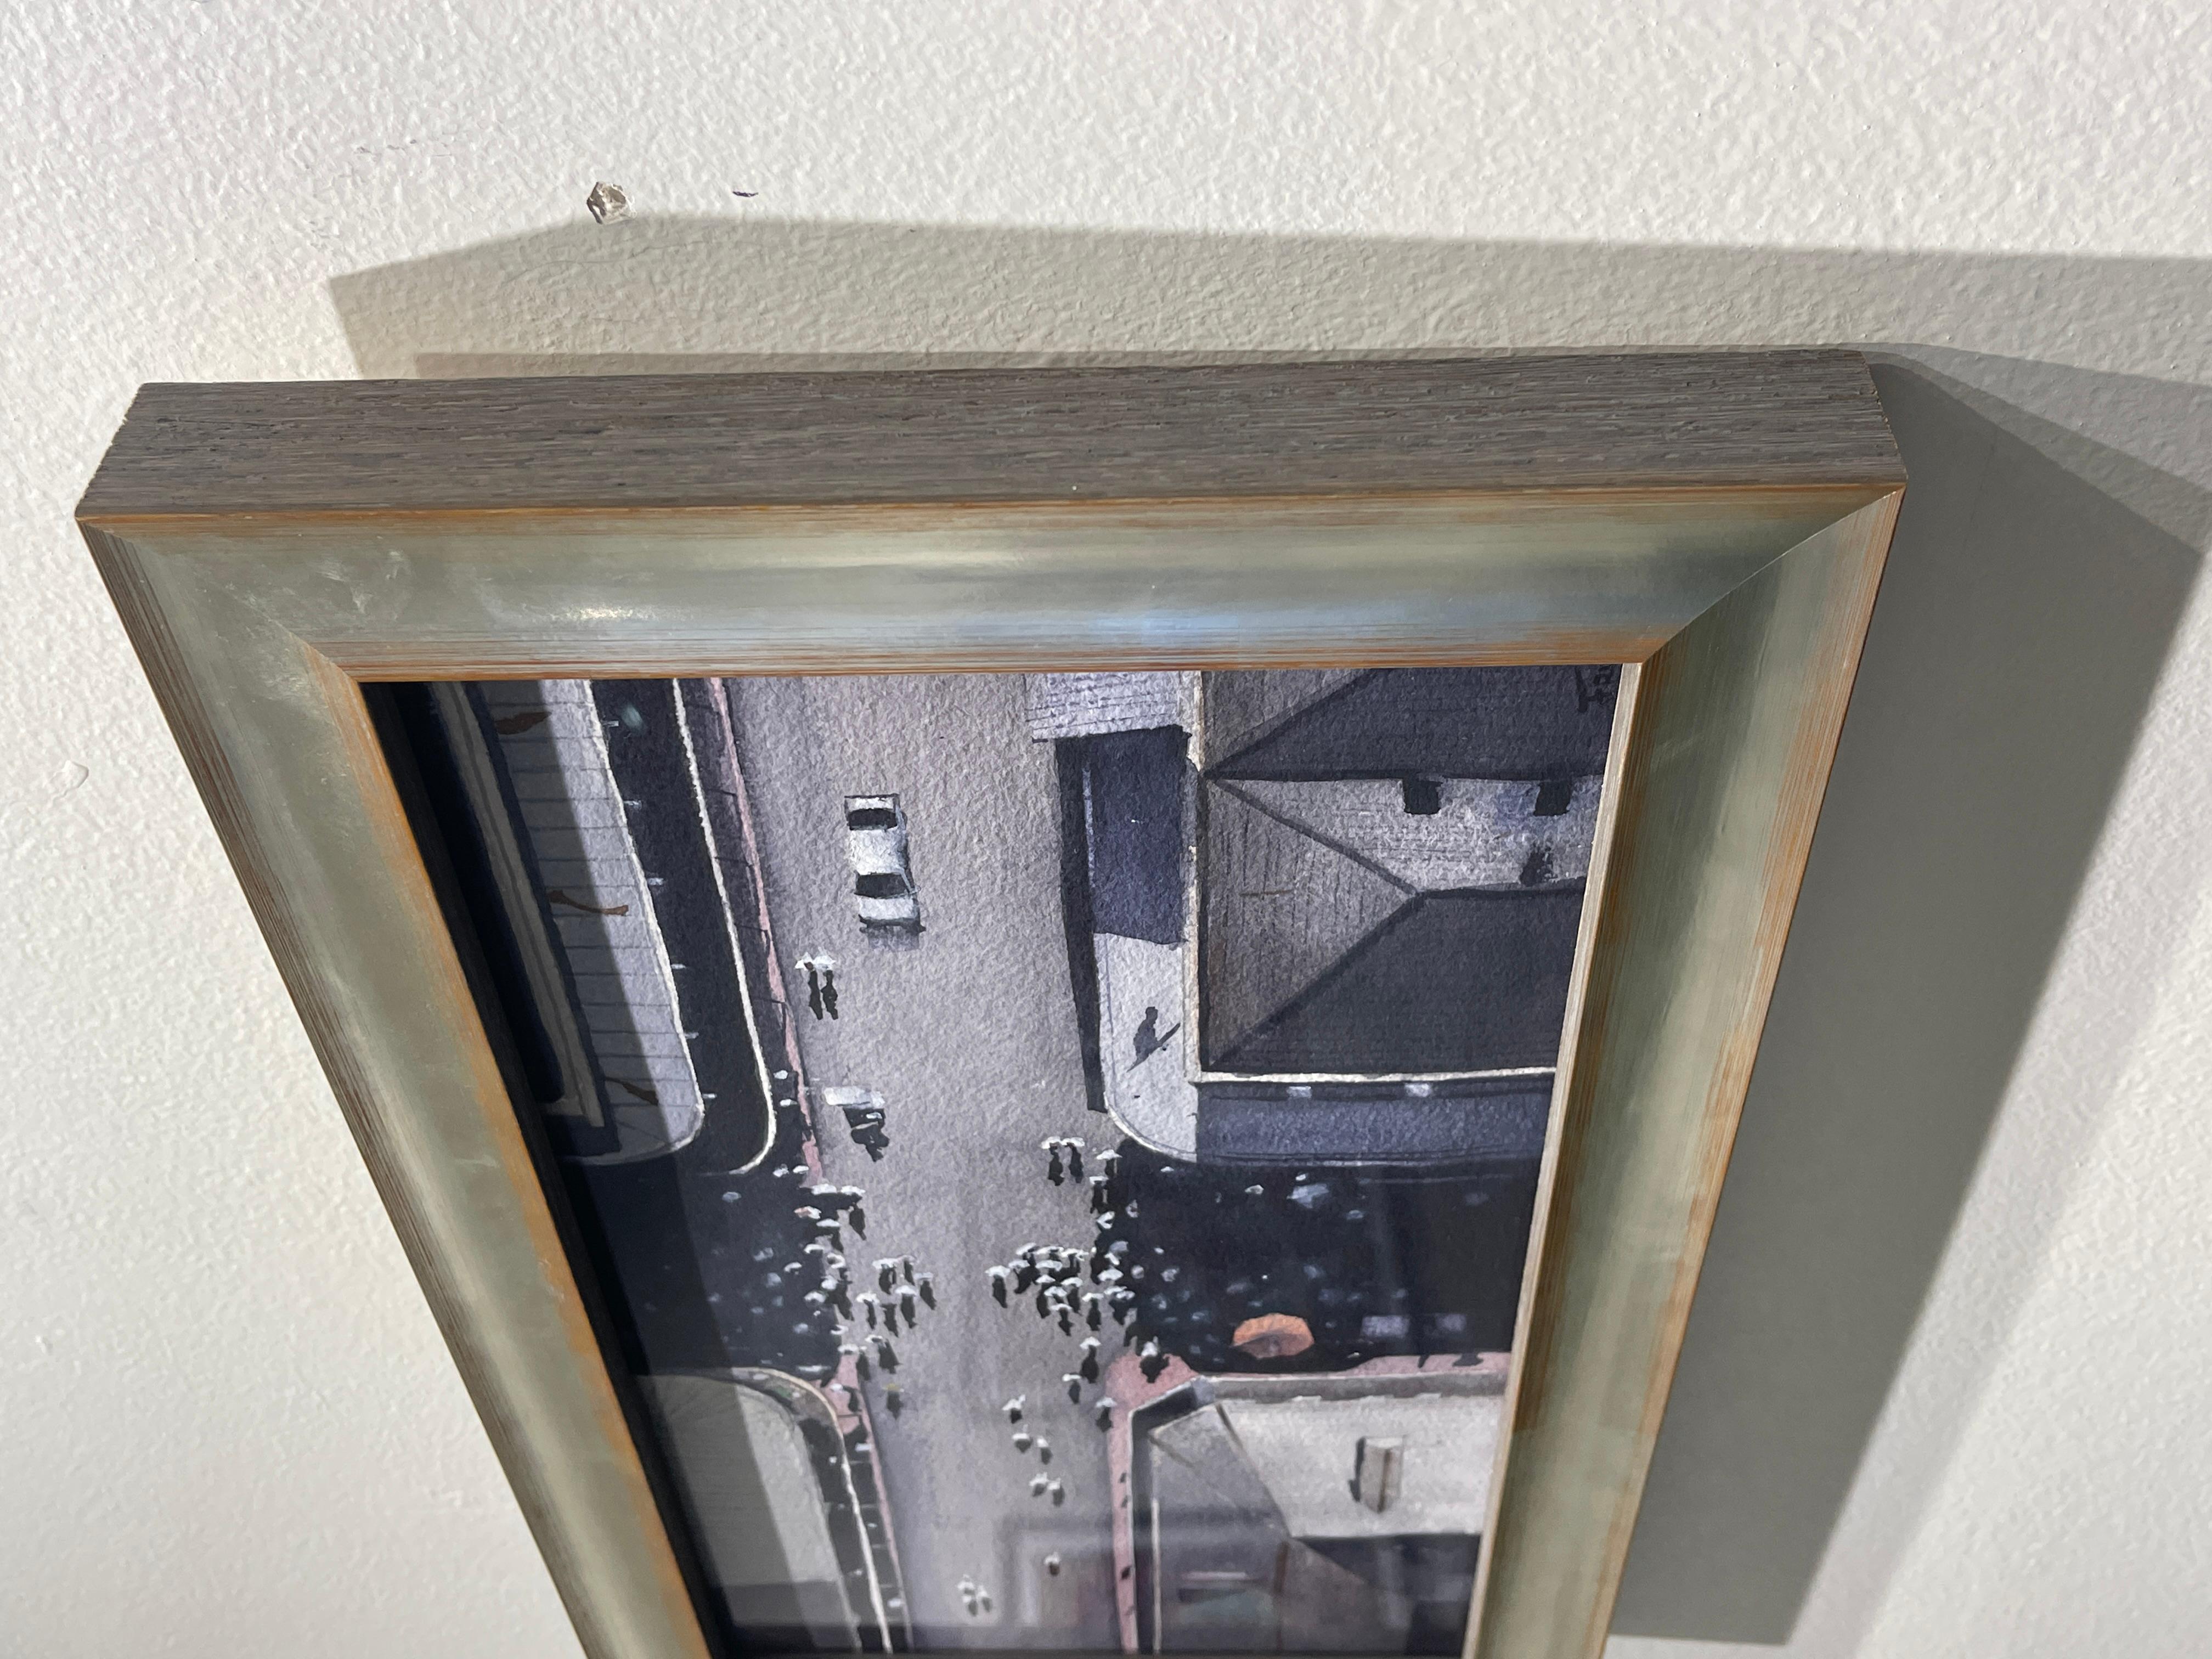 French Quarter Overhead von Sean Friloux zeigt das French Quarter aus der Vogelperspektive und eine sich versammelnde Second Line Prozession. Dieses Aquarell ist in einem silberfarbenen Rahmen gerahmt.